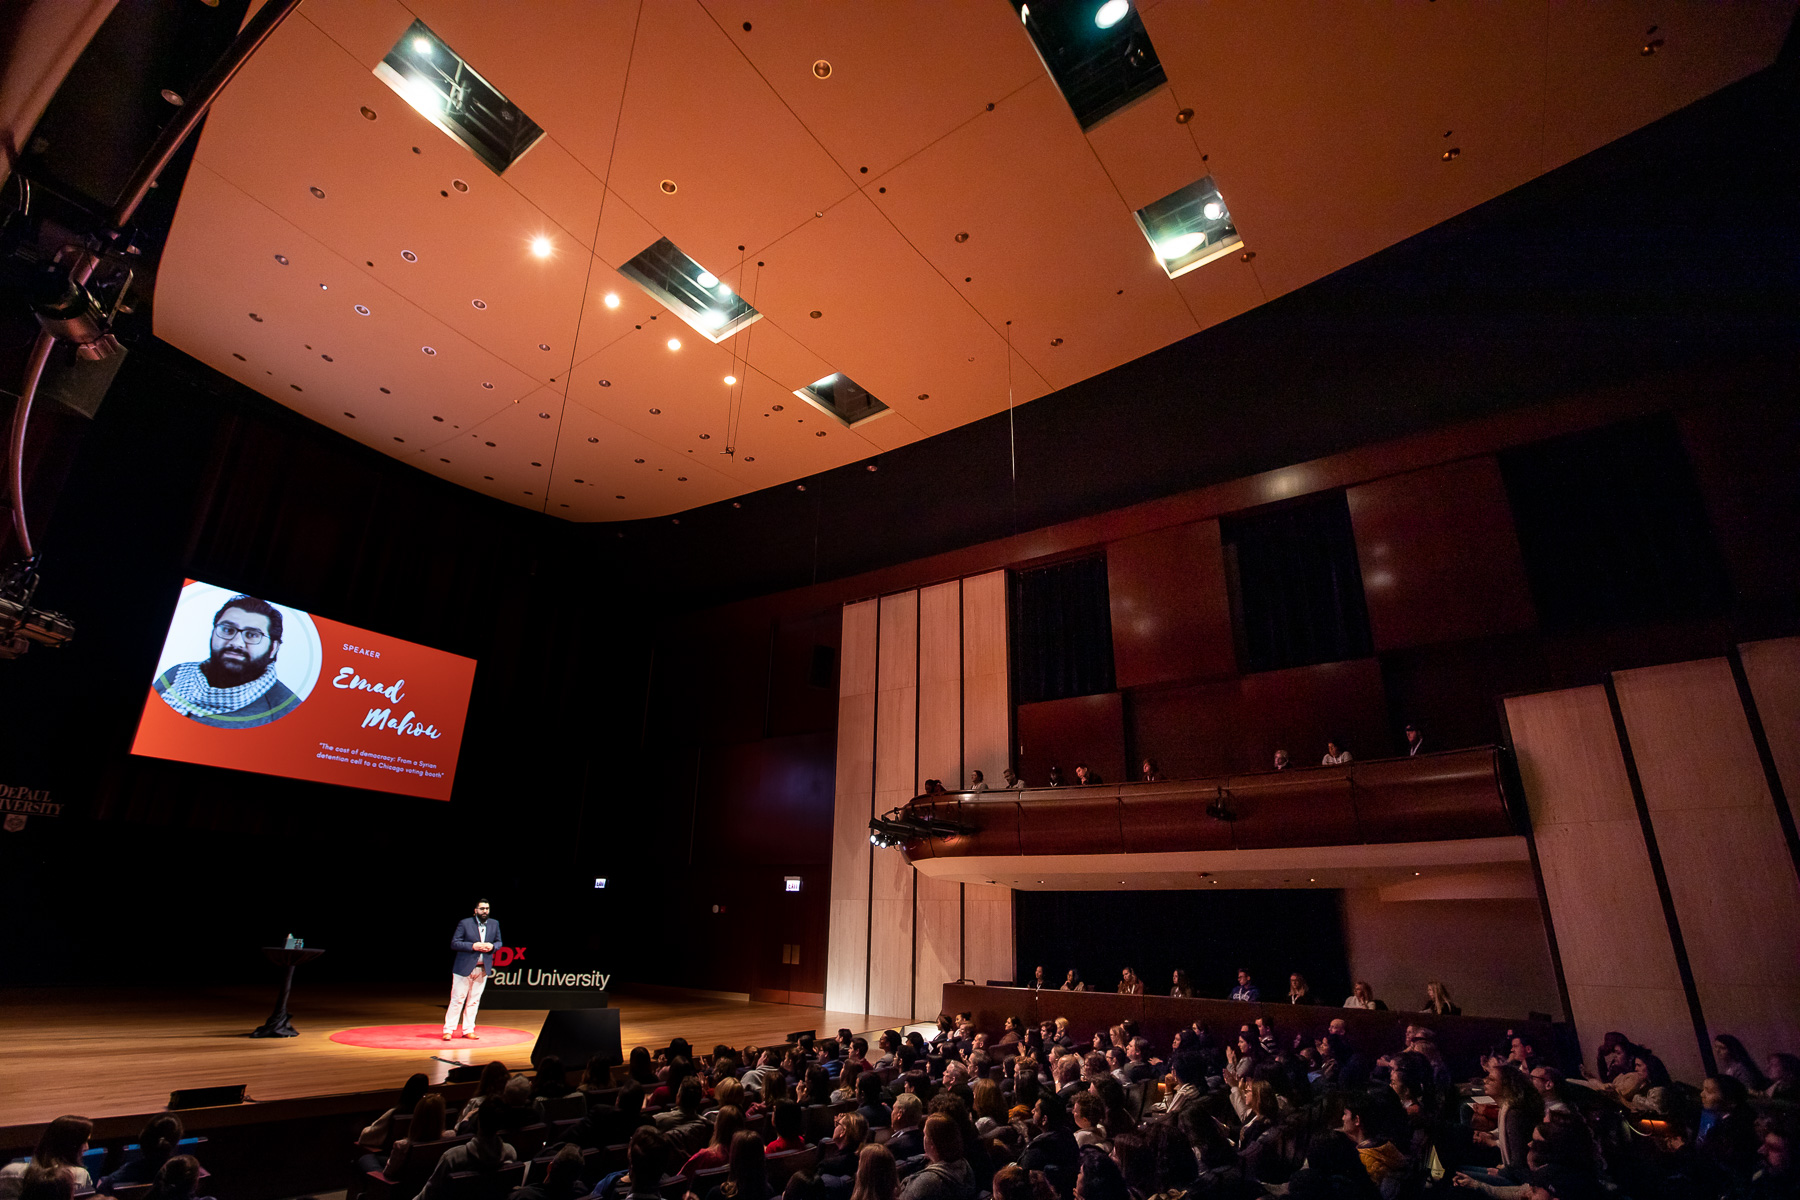 2019 TEDxDePaulUniversity